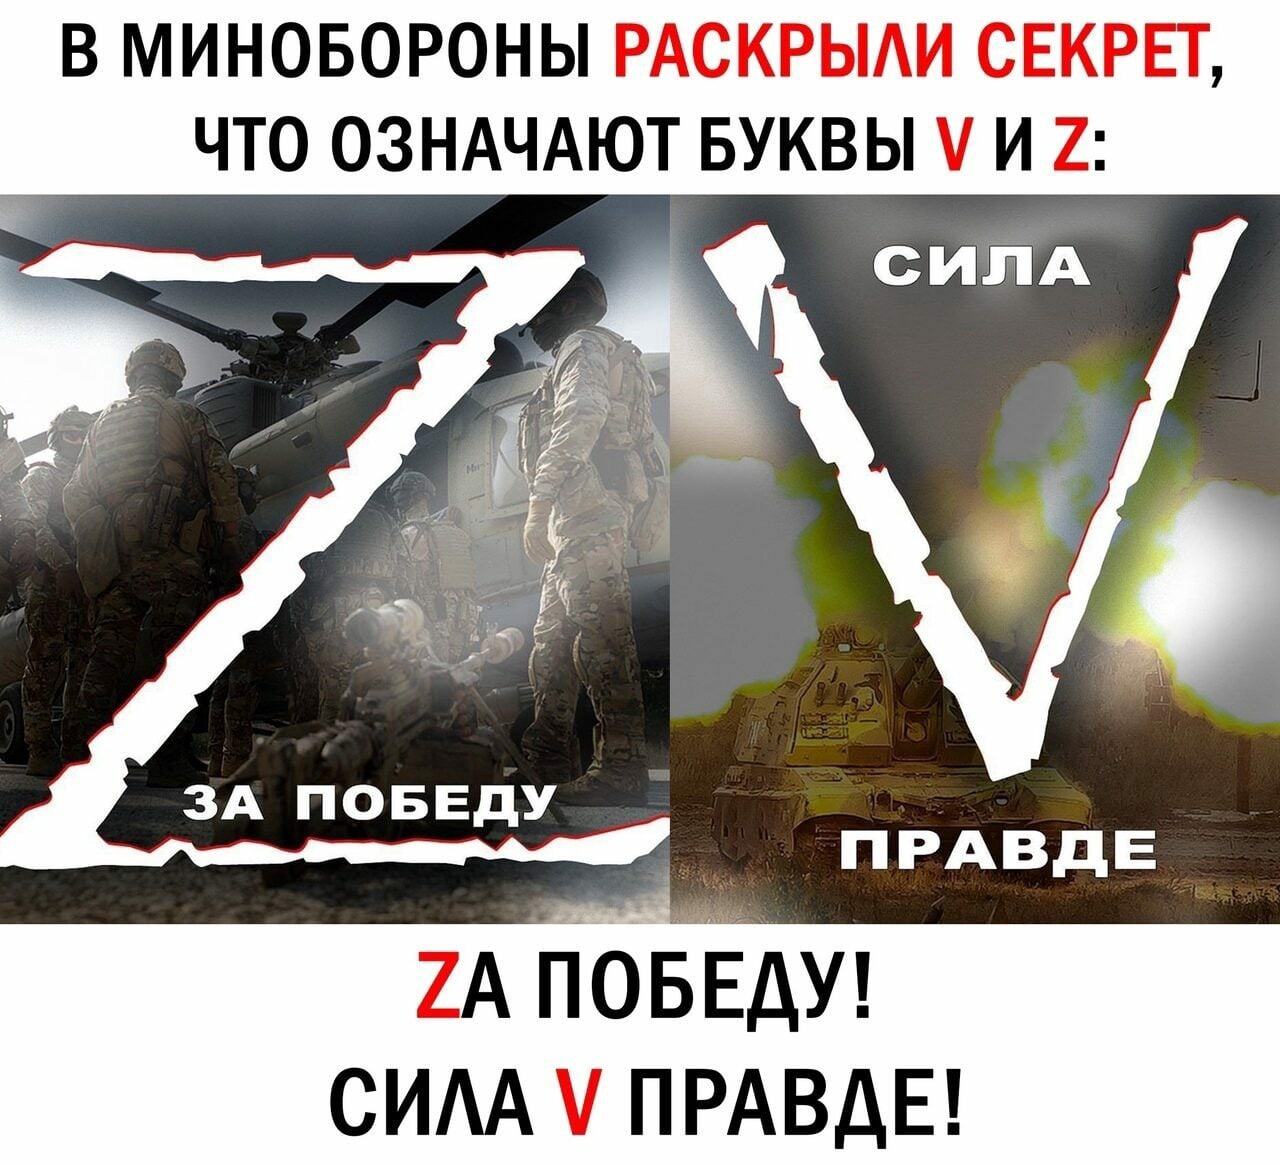 «Z и V — в твоем сердце и телефоне!» — с таким слоганом военное ведомство России опубликовало девять разных видов обоев. Эти буквы стали символом военной операции на Украине. Военные наносят их на технику.